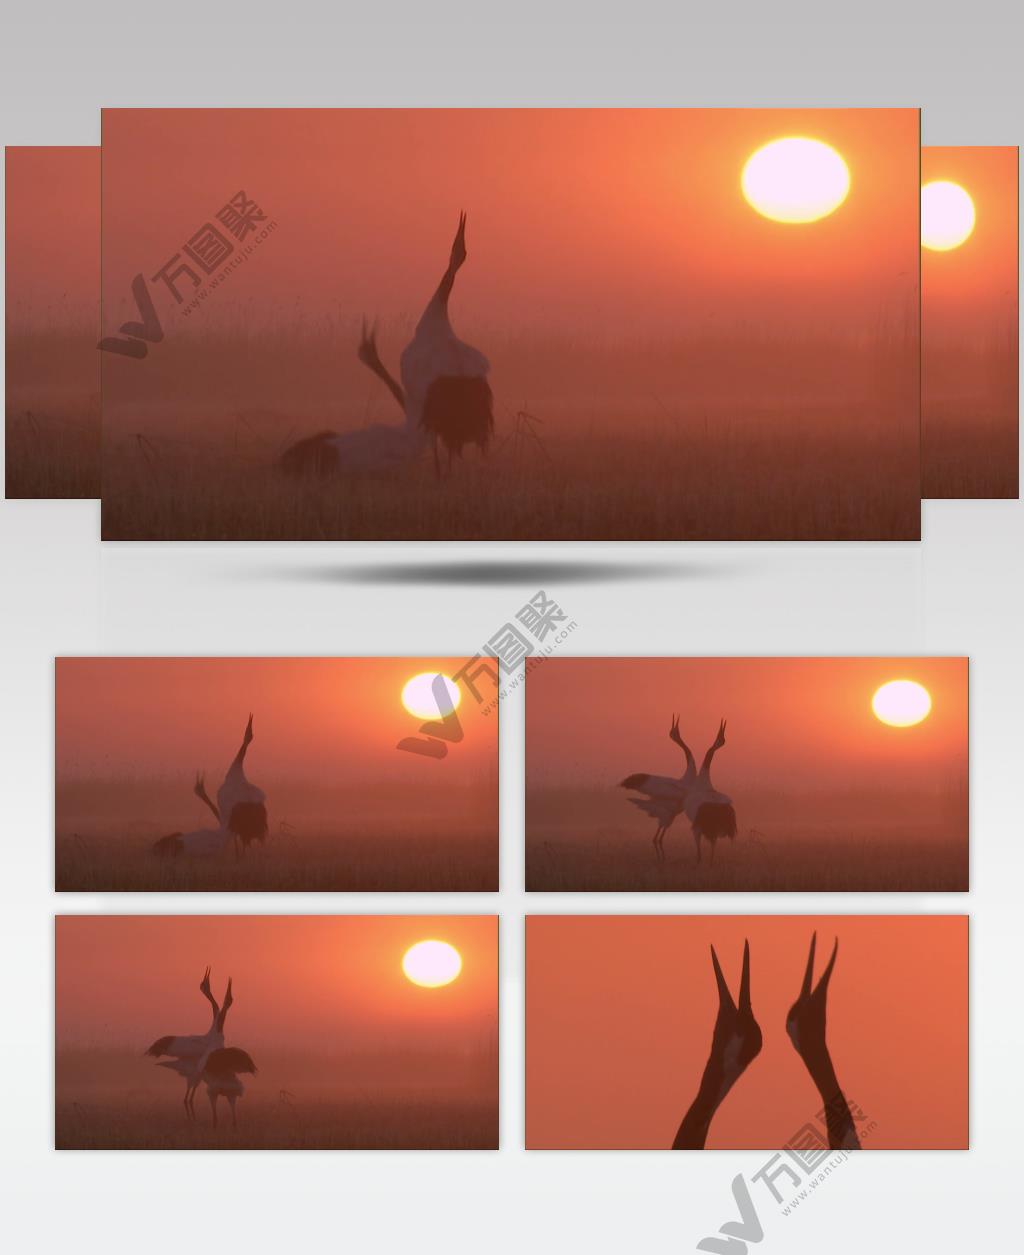 0545-晨光下的鹤舞动物视频动物动作